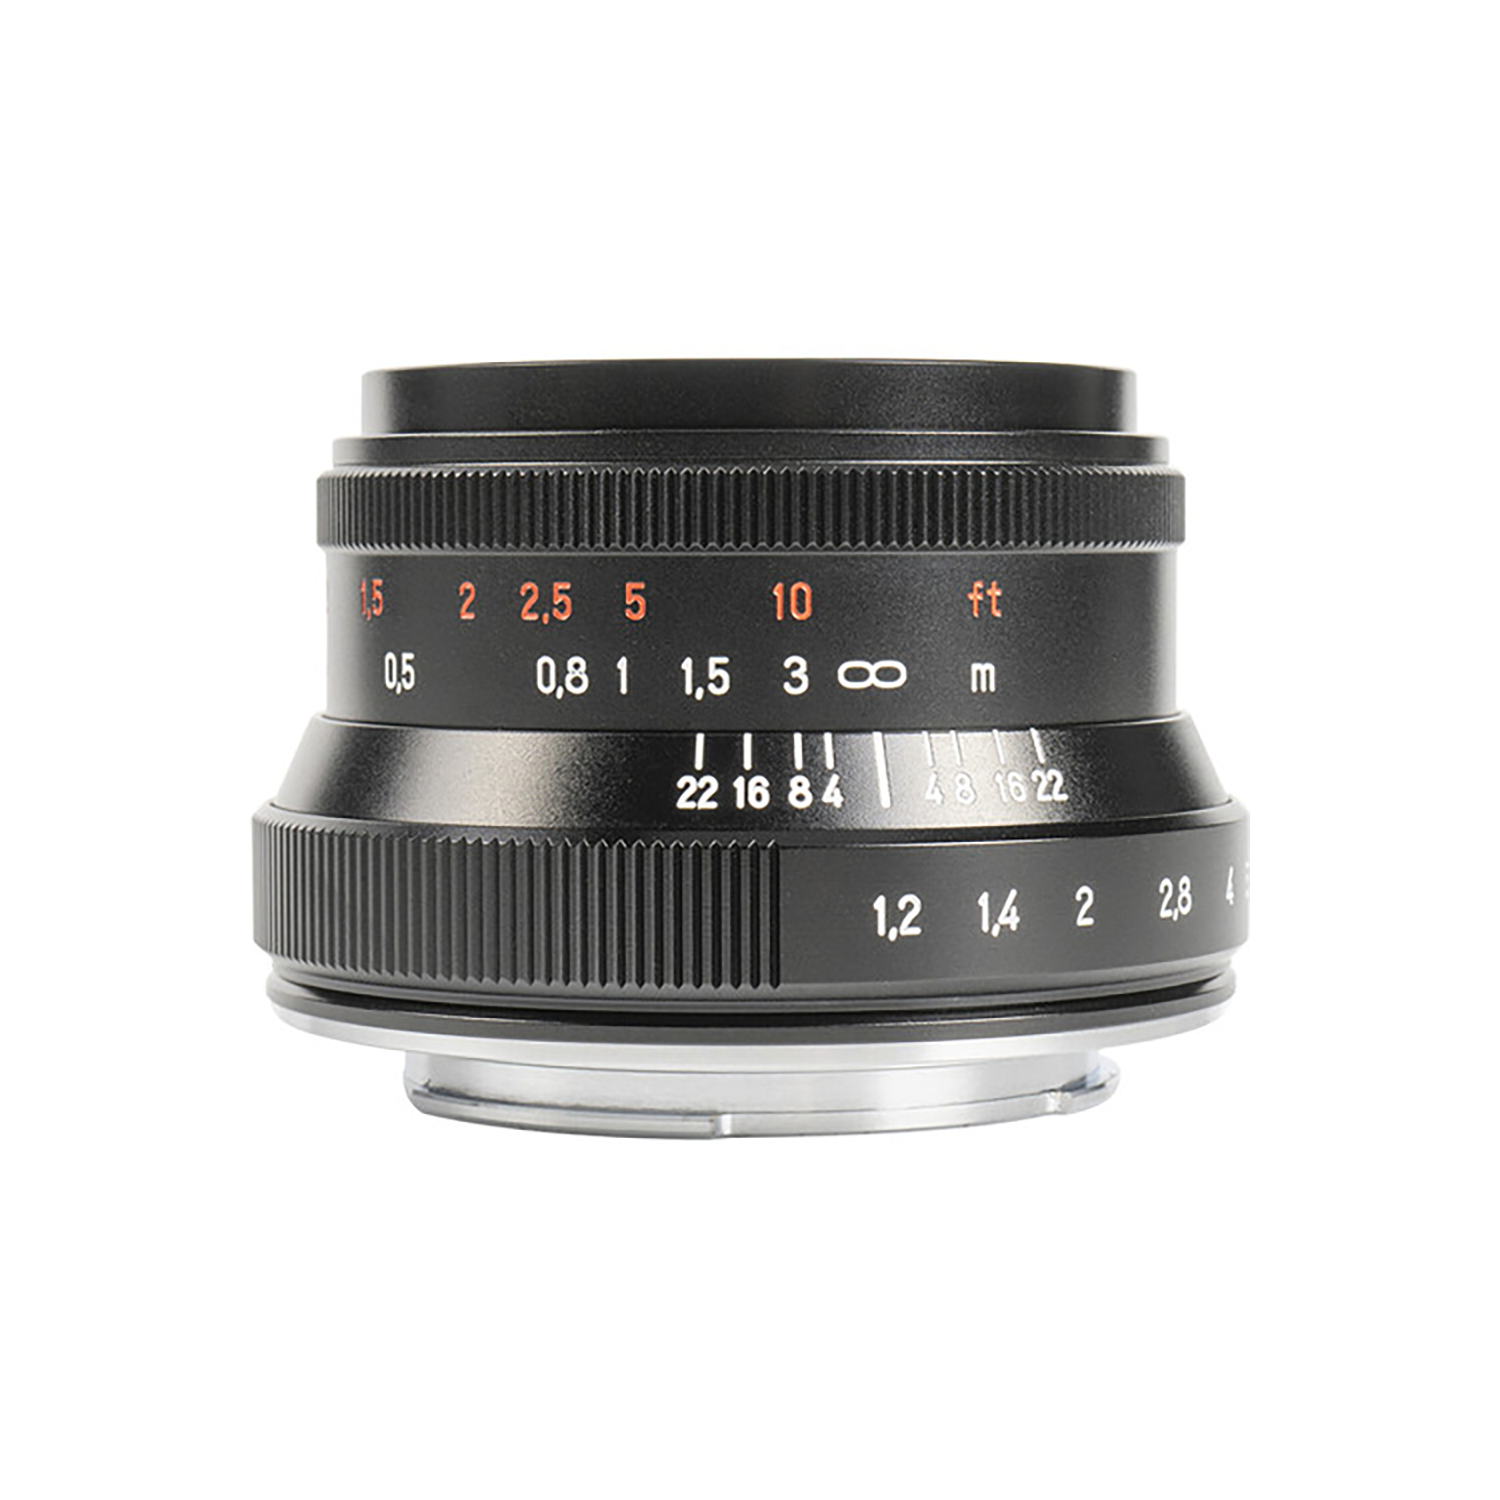 7artisans Photoelectric 35mm f/1.2 Mark II Lens for Sony E Mount